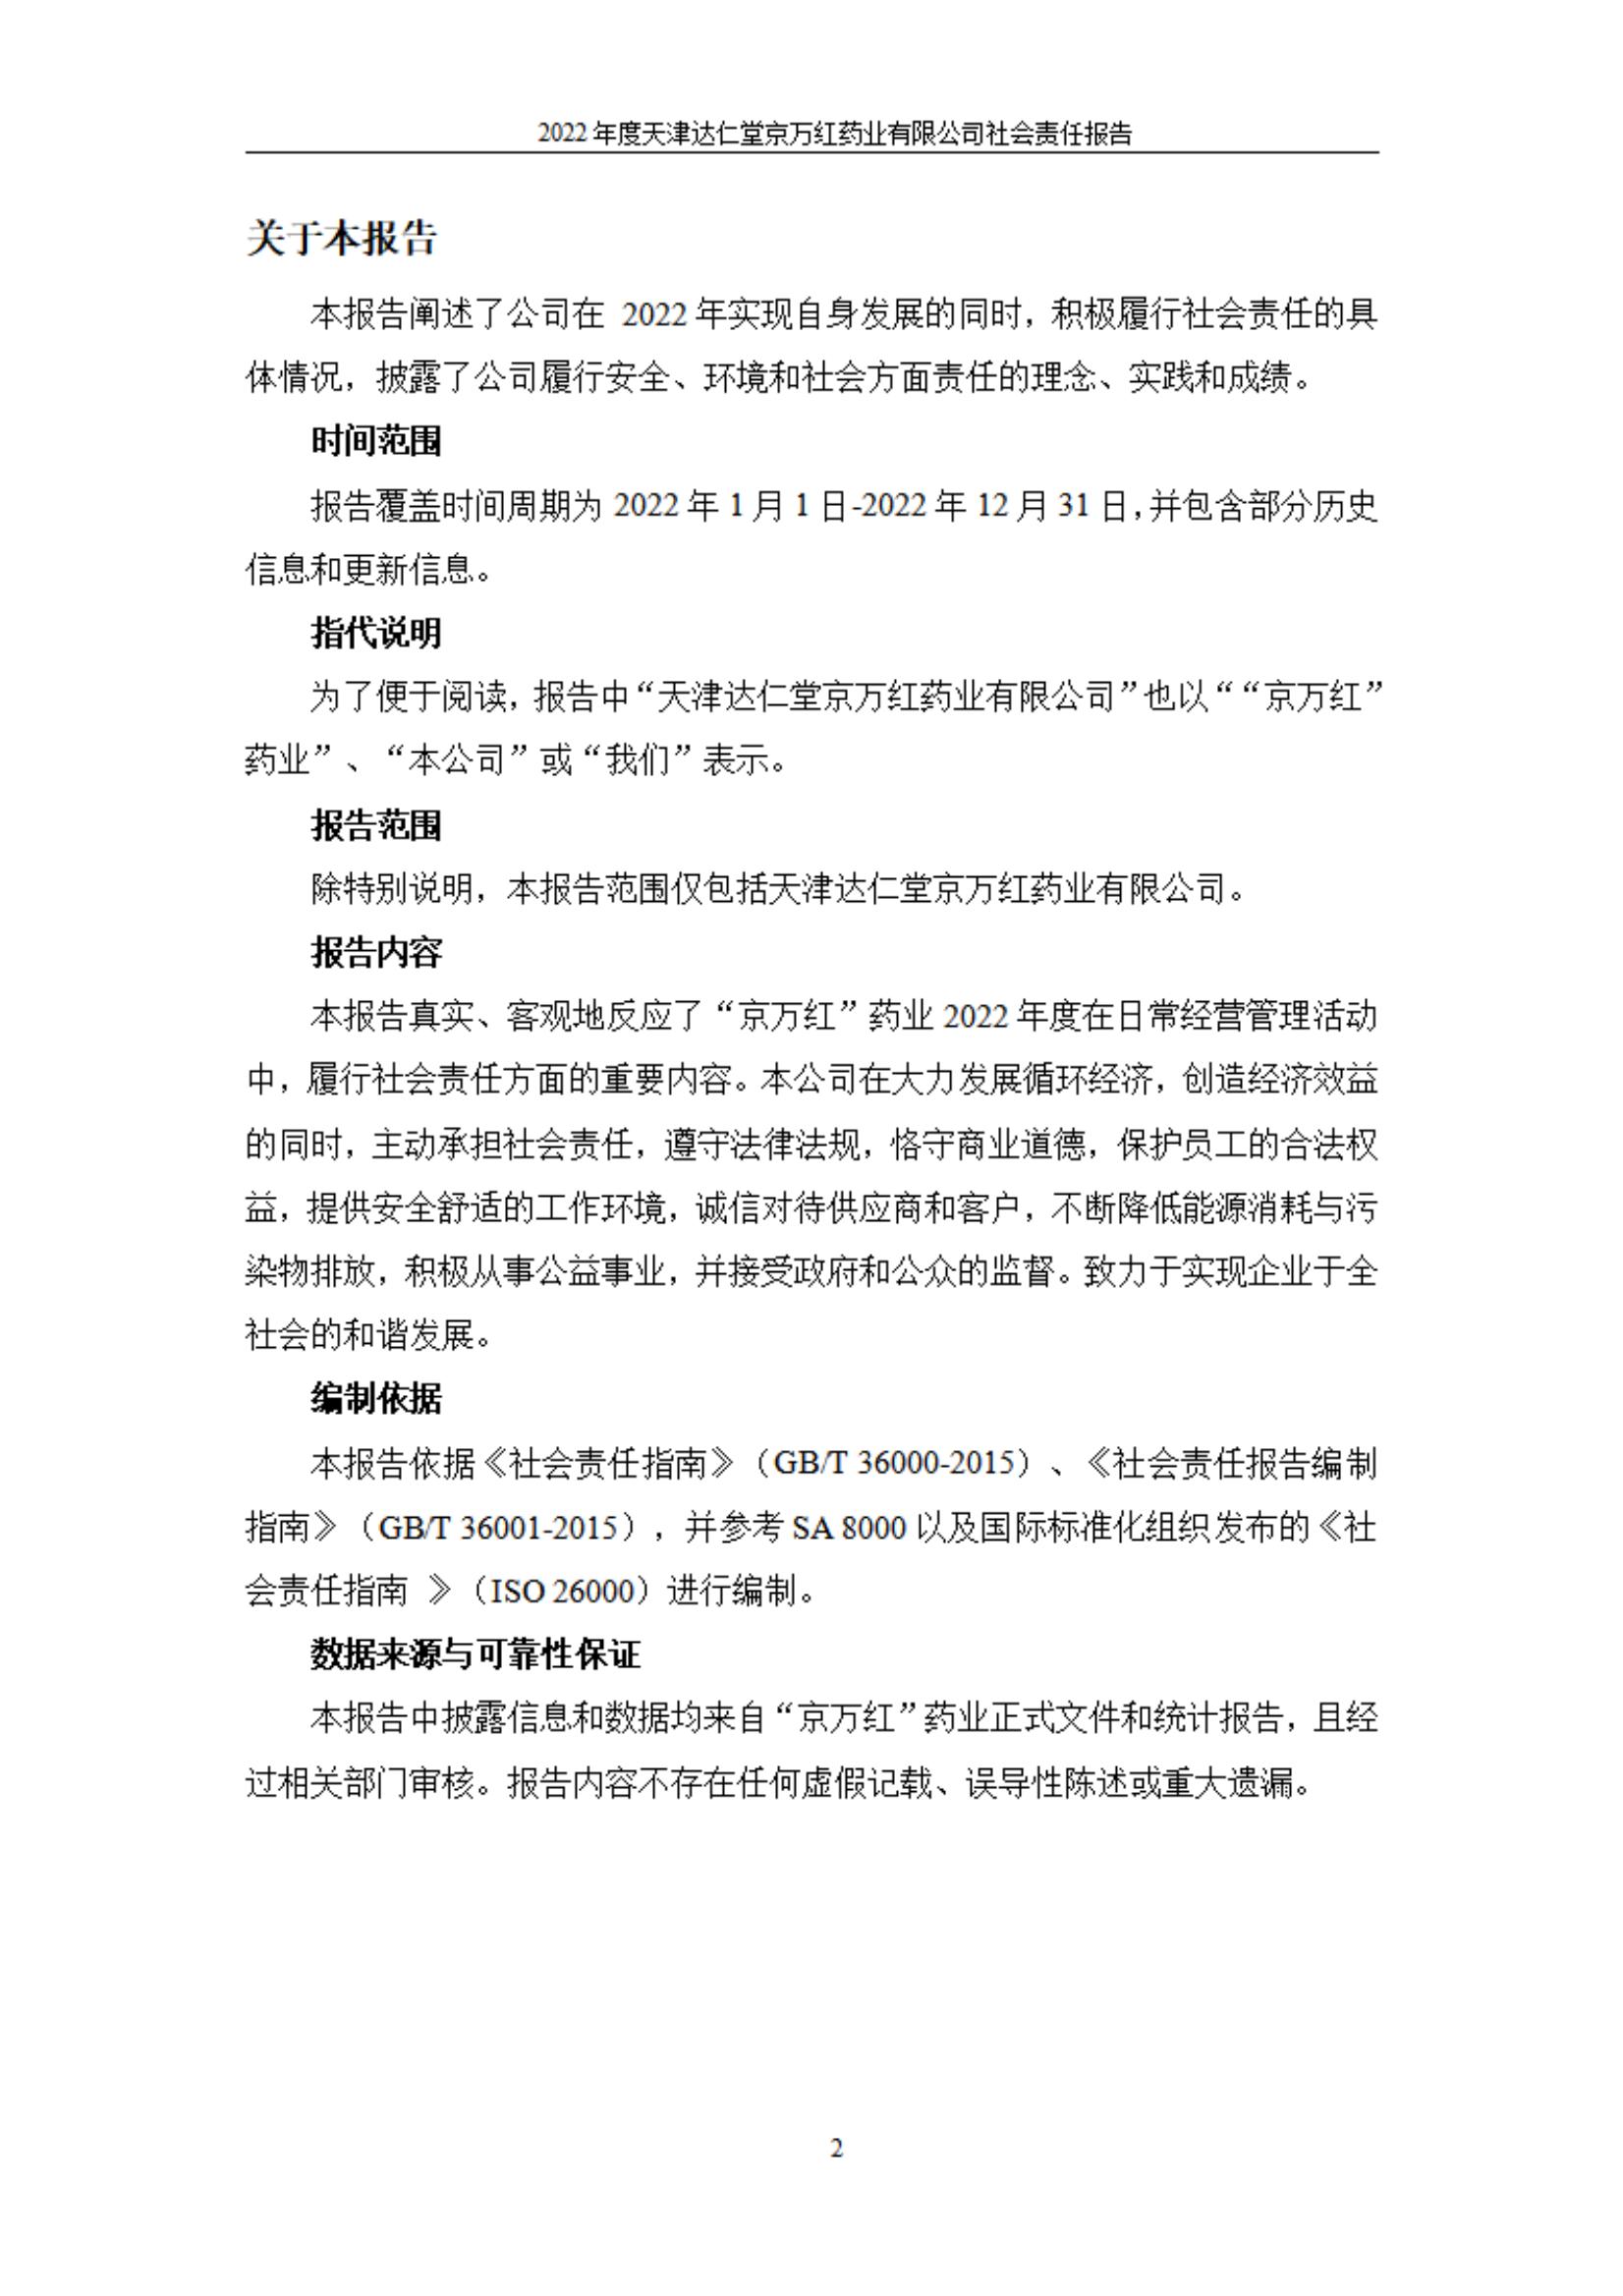 天津达仁堂京万红药业有限公司2022年度社会责任报告_02.jpg